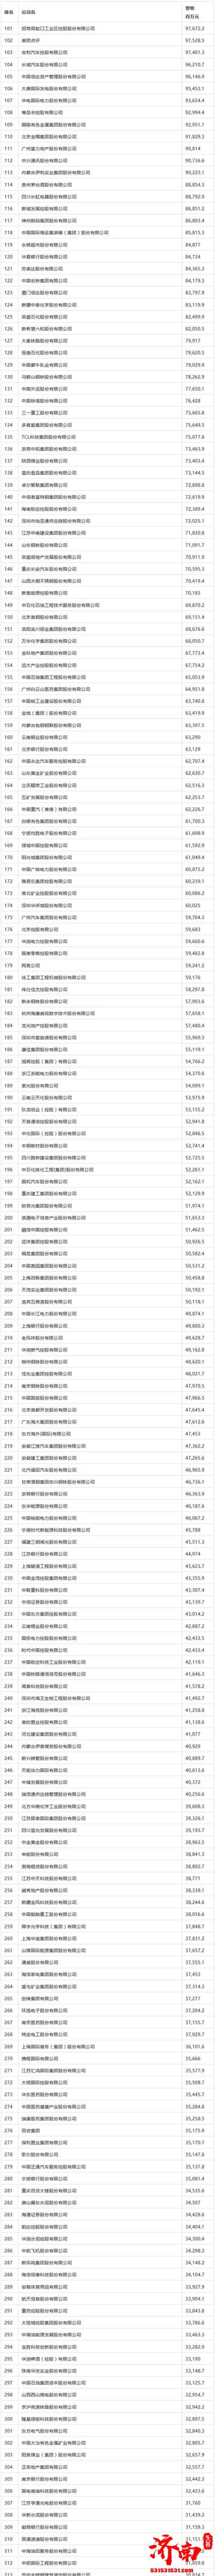 2020年《财富》中国500强排行榜正式揭晓京东位列第13位